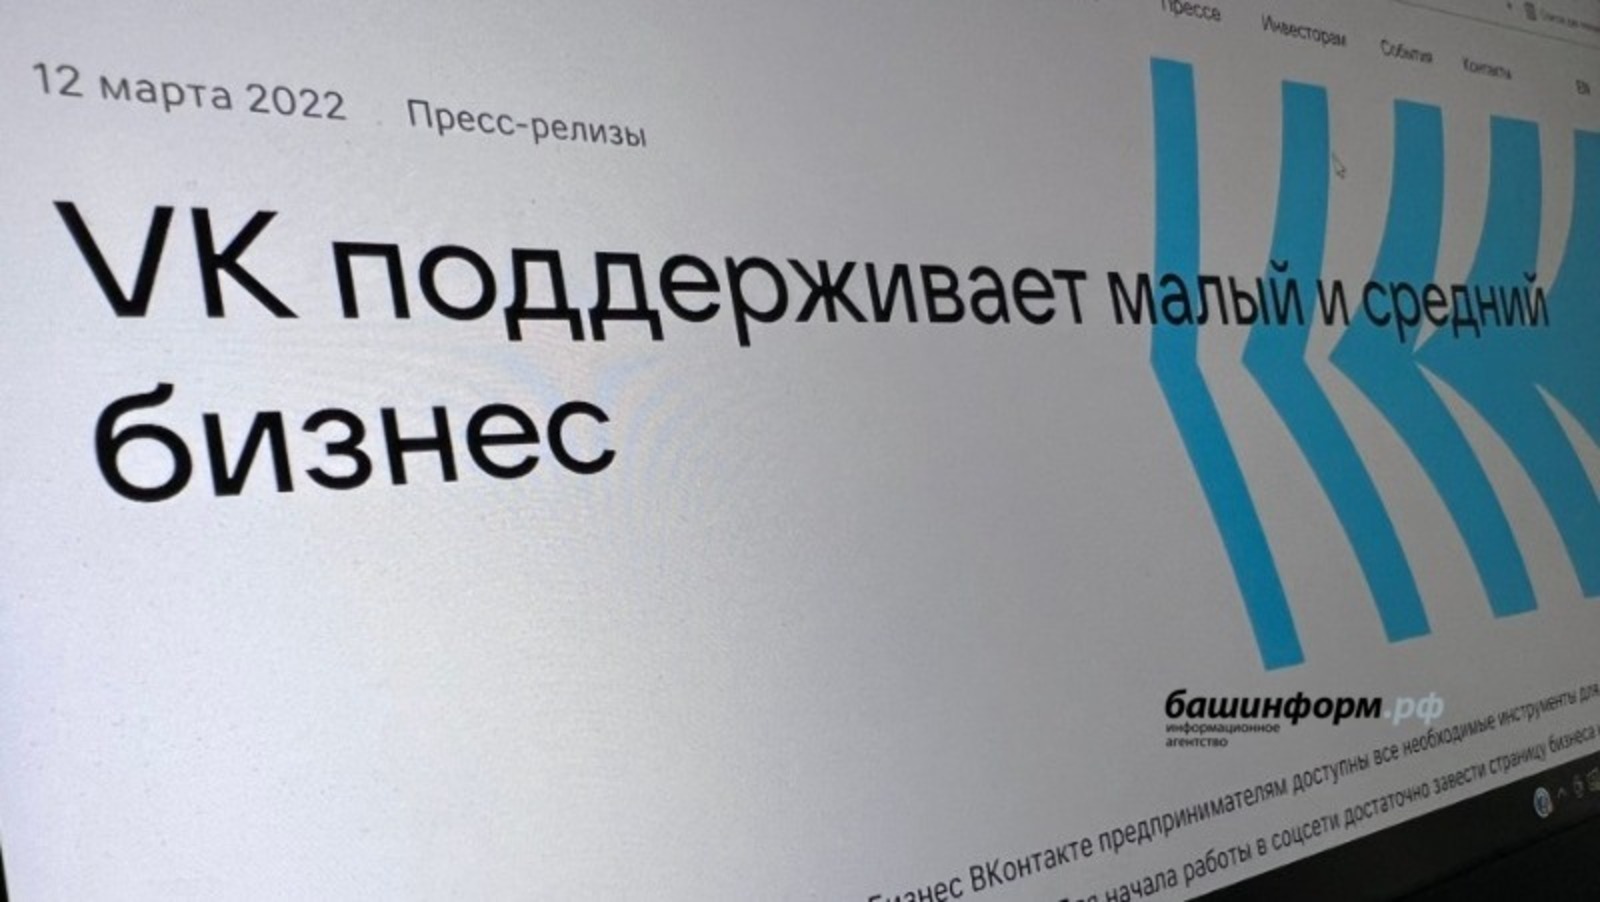 Для поддержки предпринимателей соцсеть «ВКонтакте» запускает новую платформу